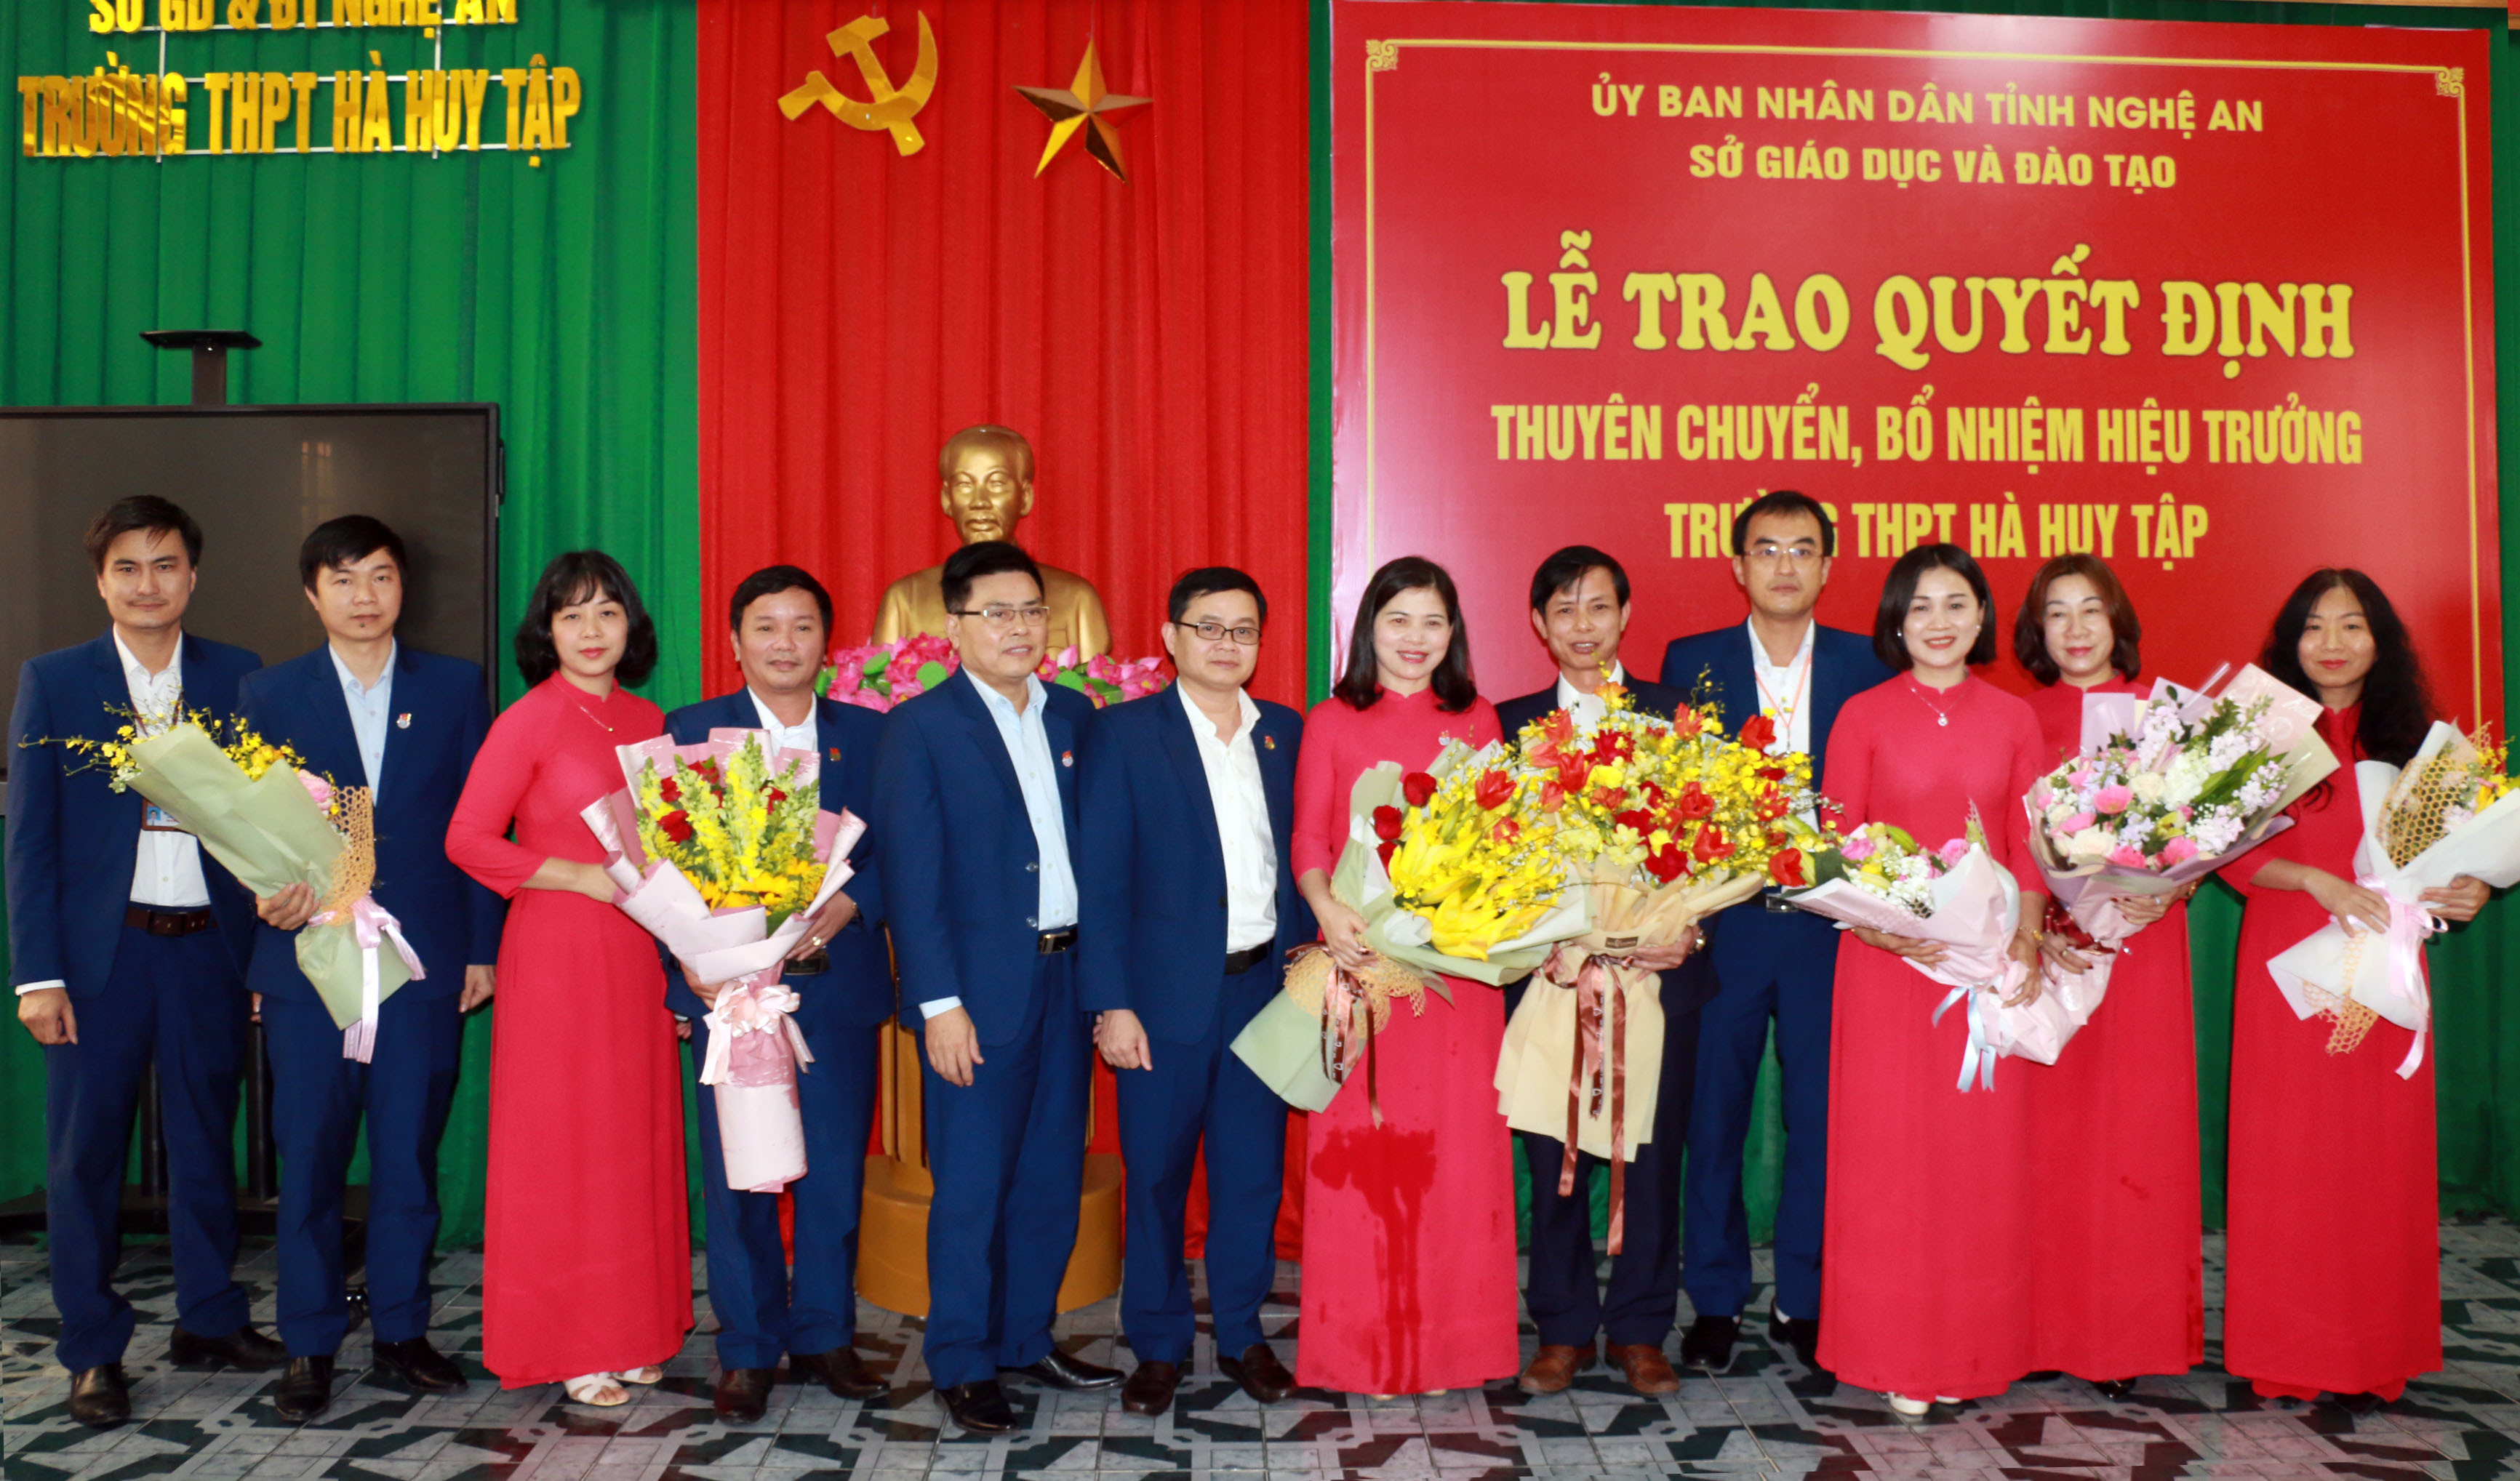 Ban giám hiệu Trường THPT Huỳnh Thúc Kháng chúc mừng thầy giáo Cao Thanh Bảo nhận nhiệm vụ mới. Ảnh: MH